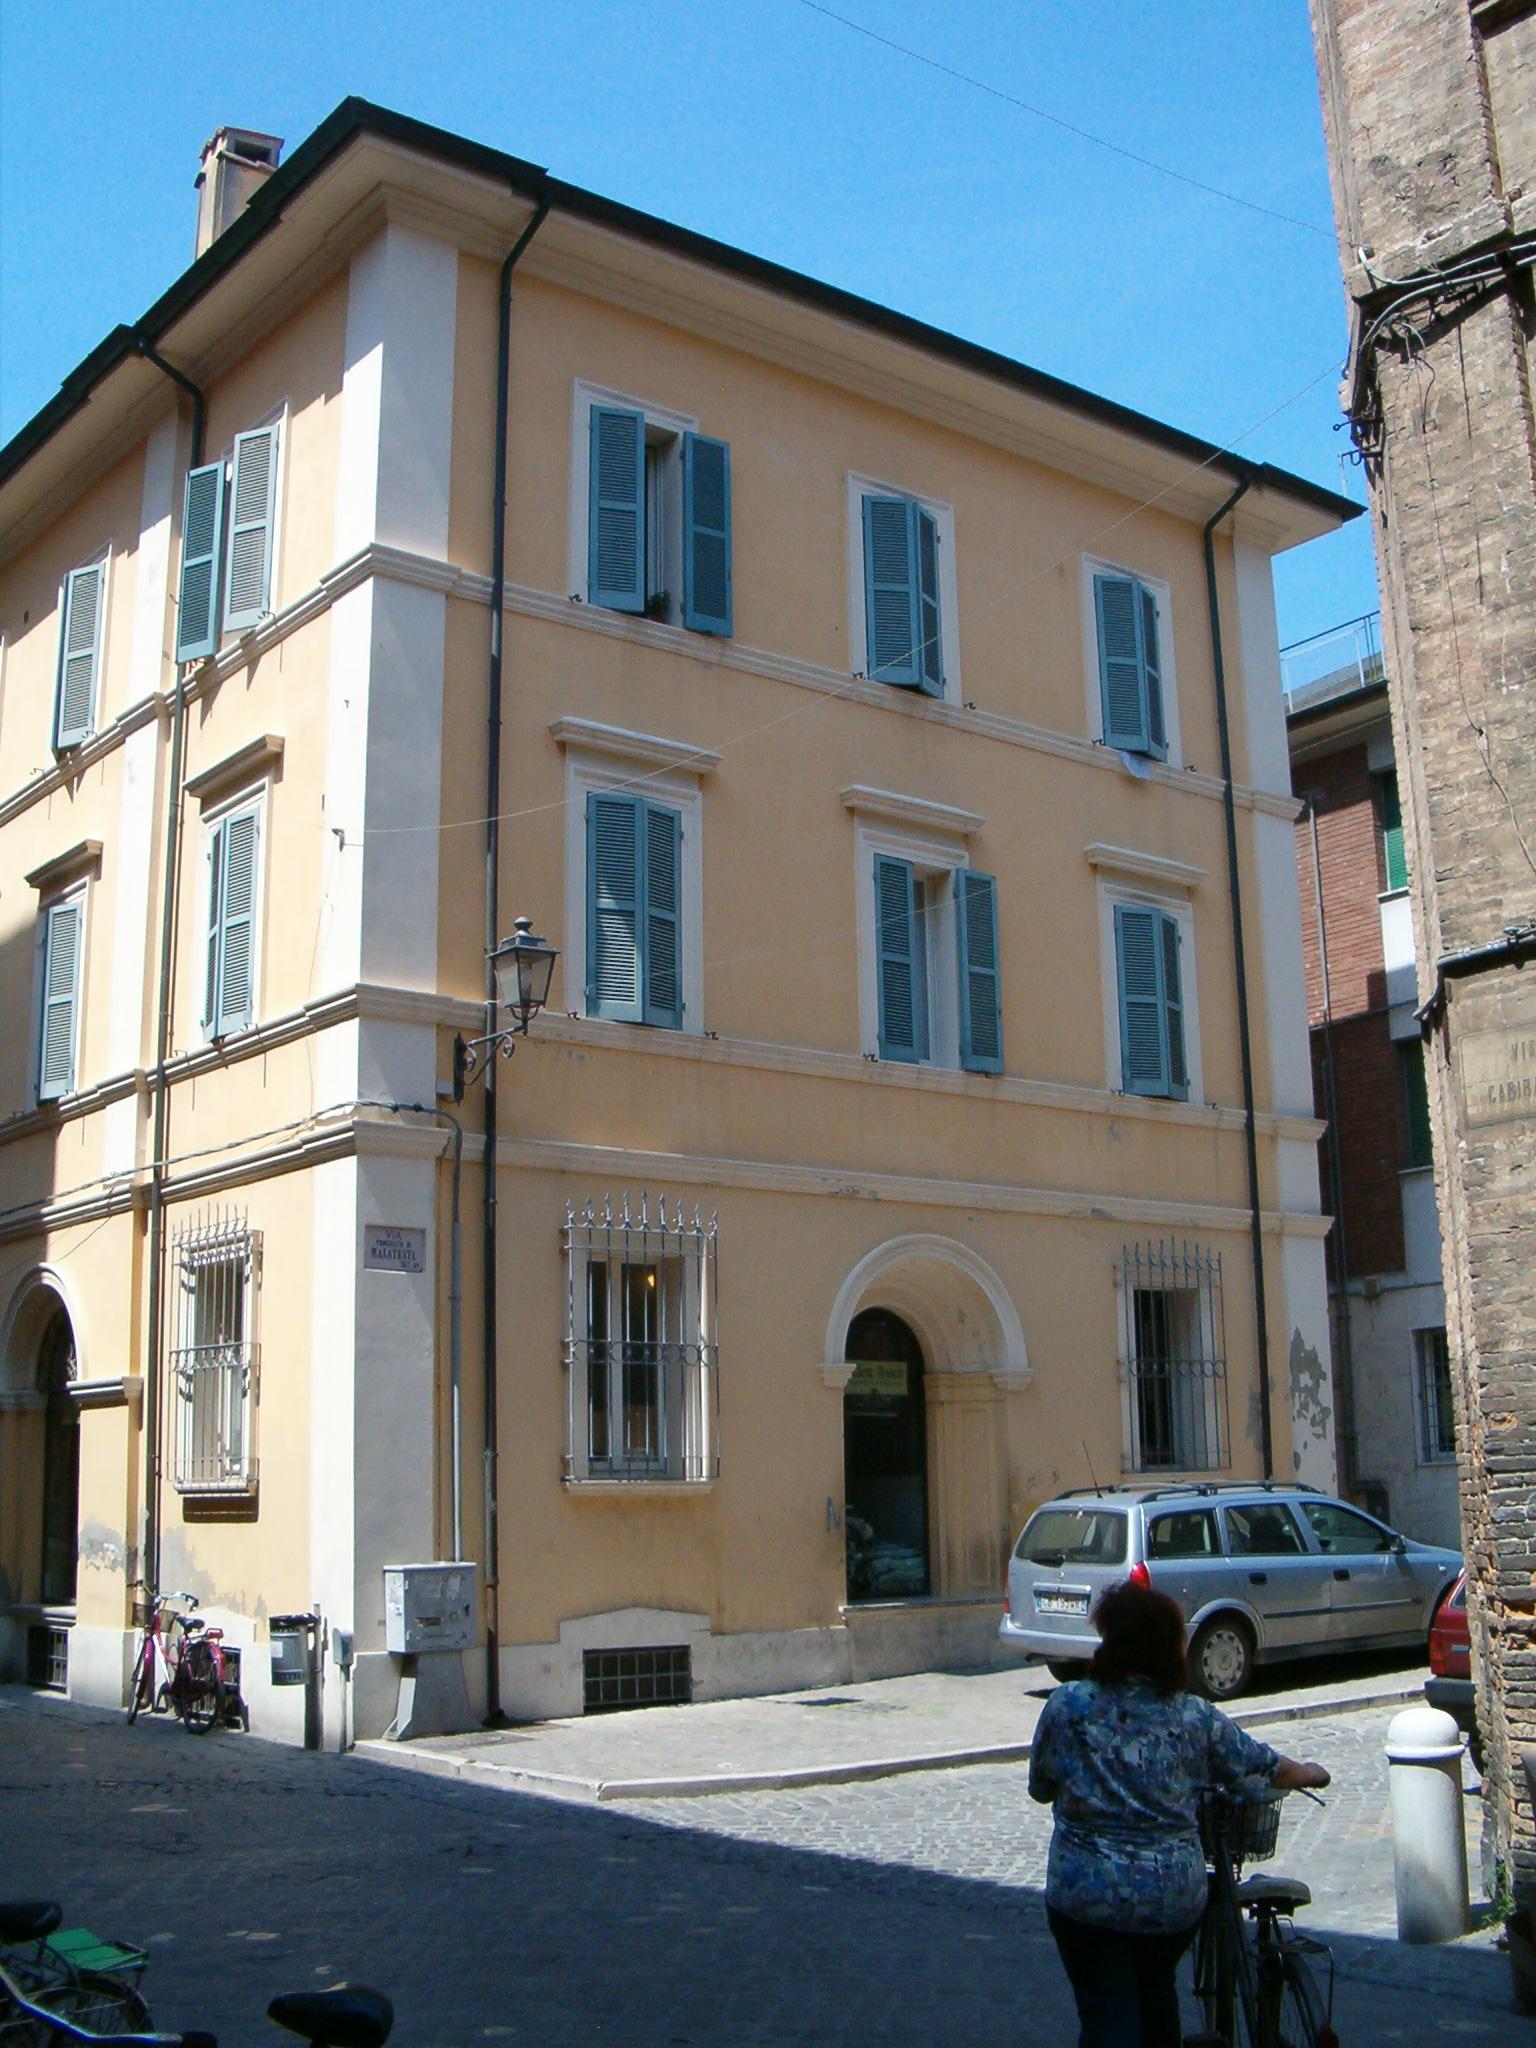 Palazzo signorile (palazzo, signorile) - Fano (PU) 